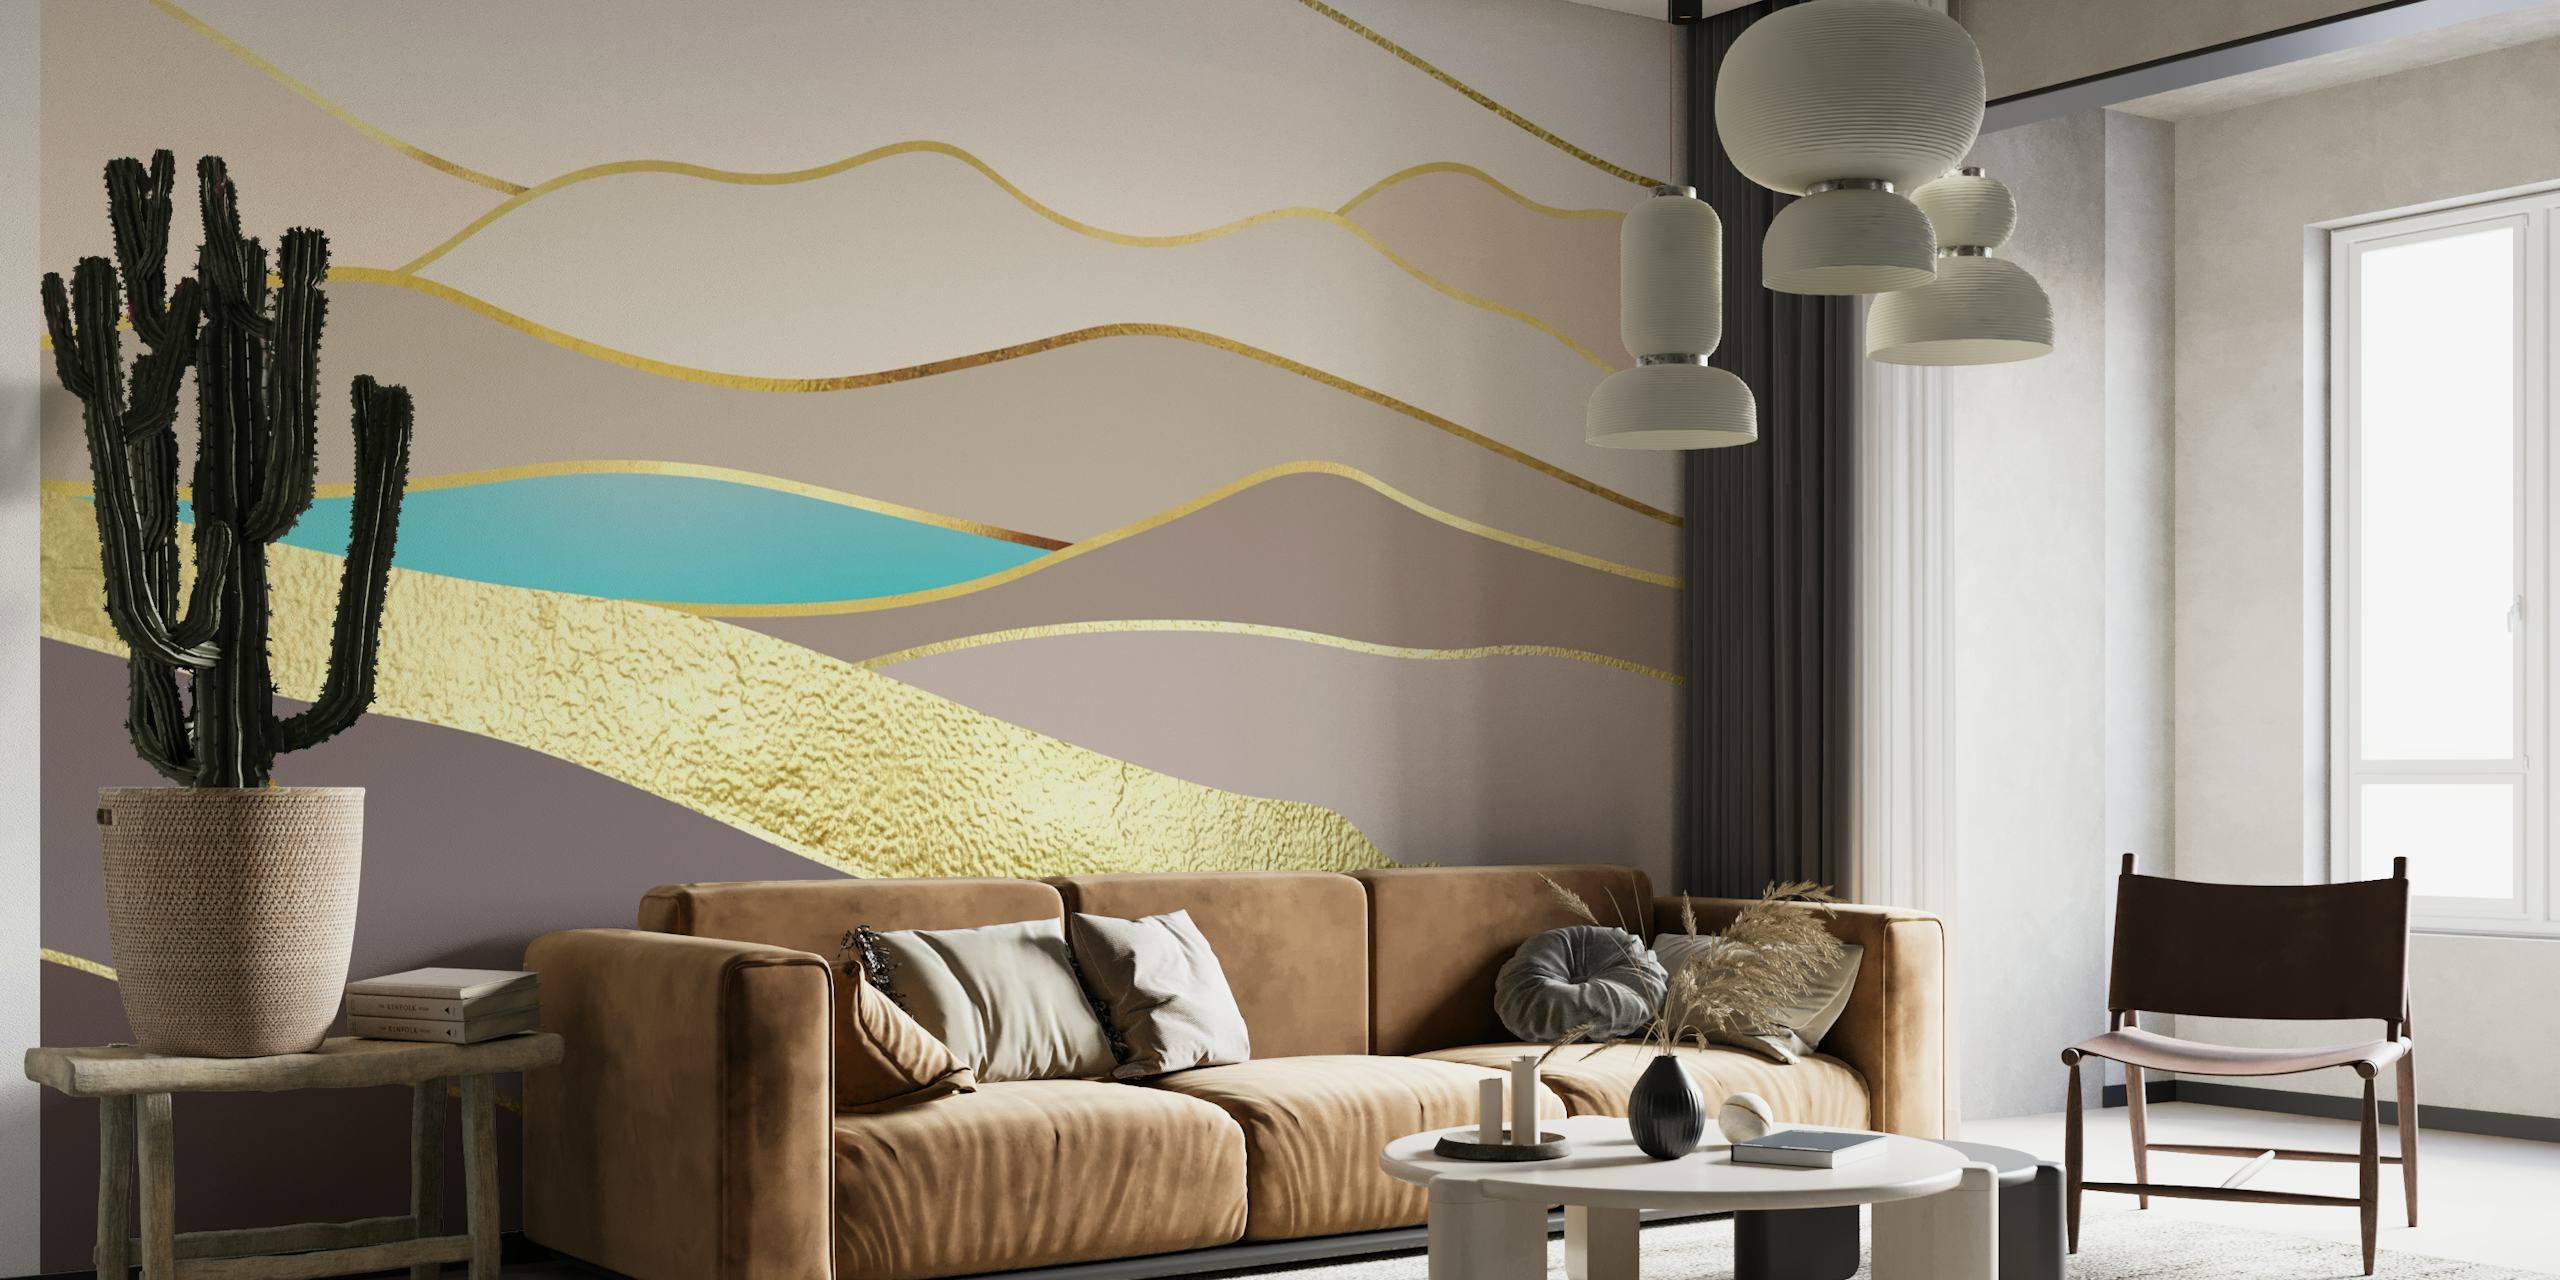 Zidna slika sa apstraktno mirnim pejzažom s blagim padinama i metalik zlatnim detaljima